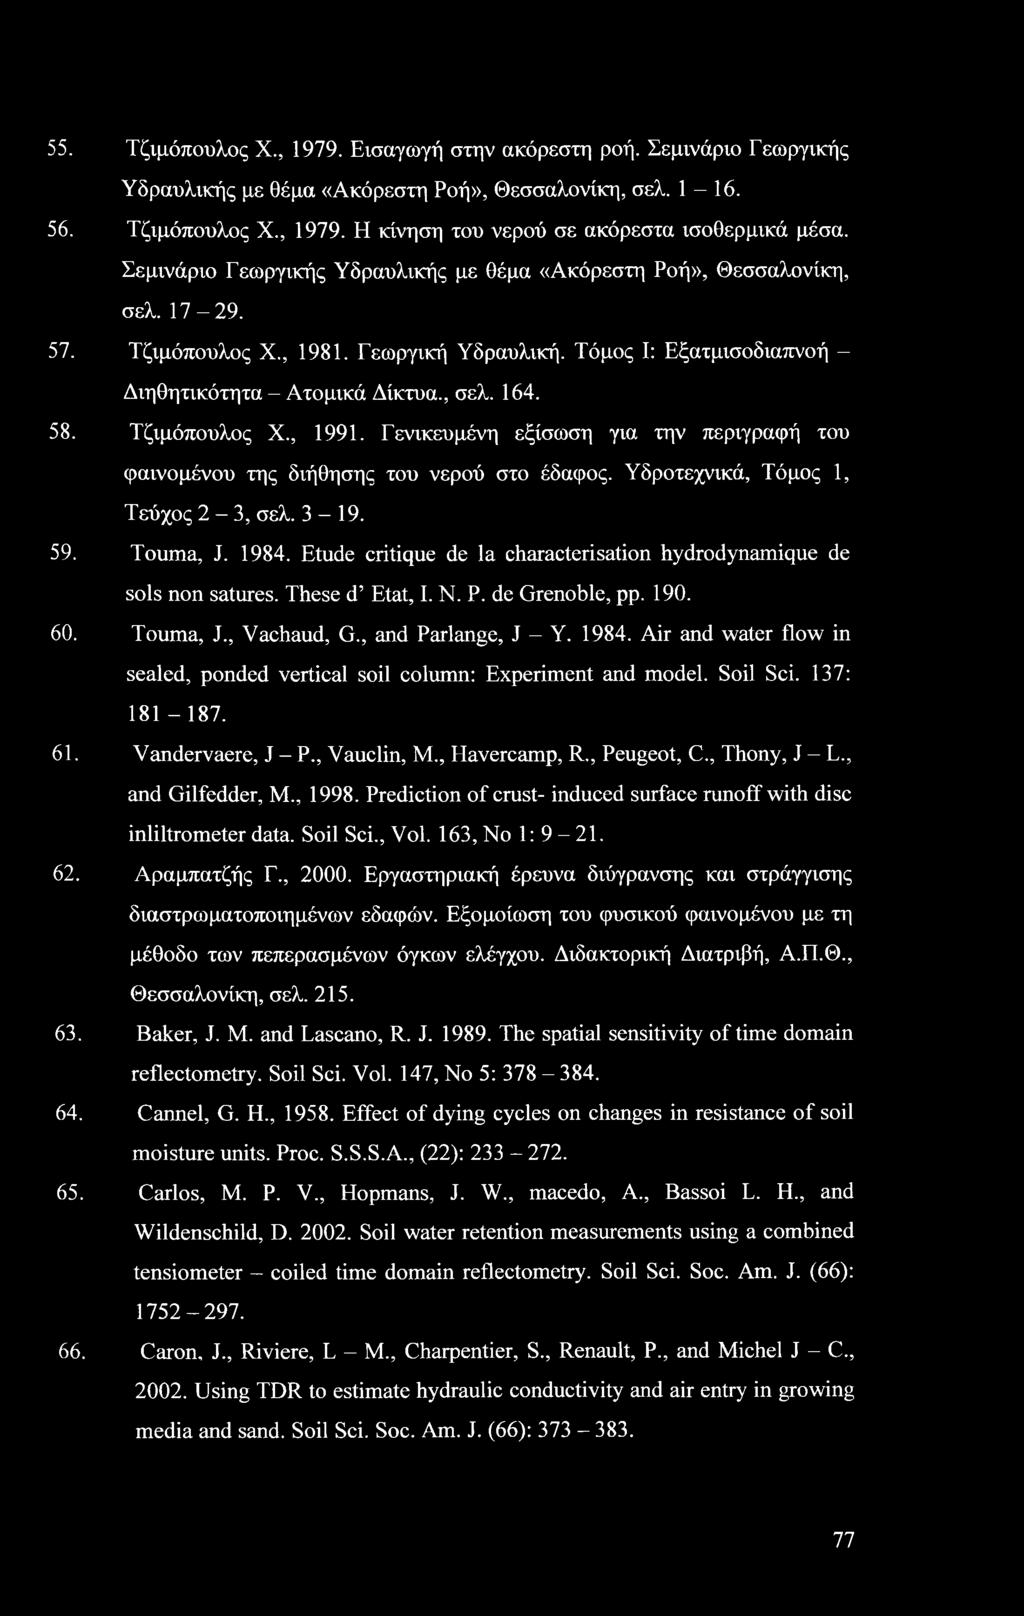 Τζιμόπουλος X., 1991. Γενικευμένη εξίσωση για την περιγραφή του φαινομένου της διήθησης του νερού στο έδαφος. Υδροτεχνικά, Τόμος 1, Τεύχος 2-3, σελ. 3-19. 59. Touma, J. 1984.